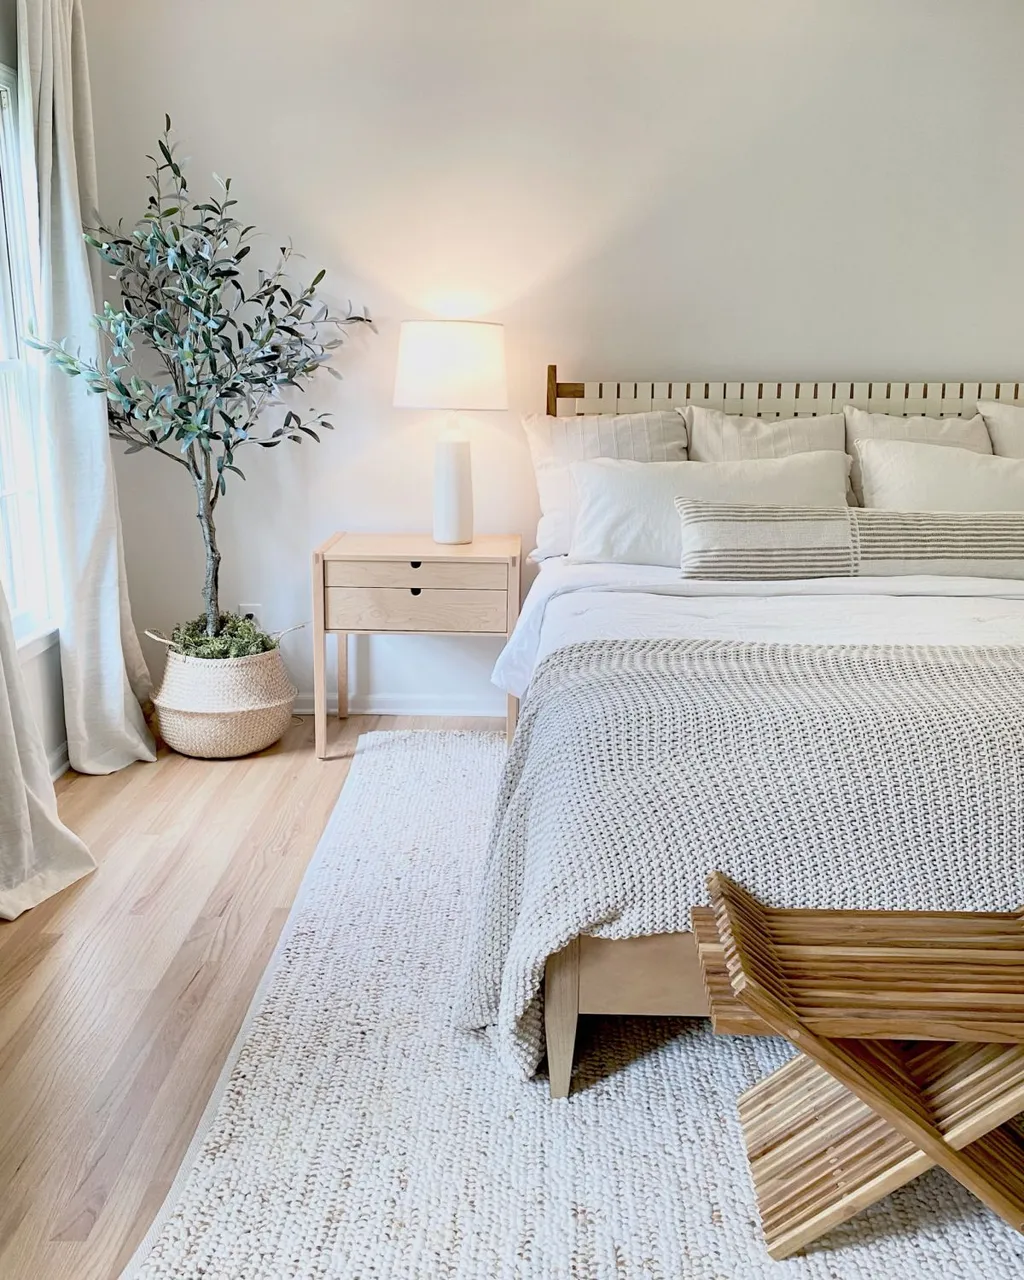 Màu sắc nhẹ nhàng tạo ra một không gian dễ chịu cho vợ chồng sau một ngày làm việc mệt mỏi (Mẫu thiết kế phòng ngủ 9m2 cho vợ chồng theo phong cách Scandinavian)